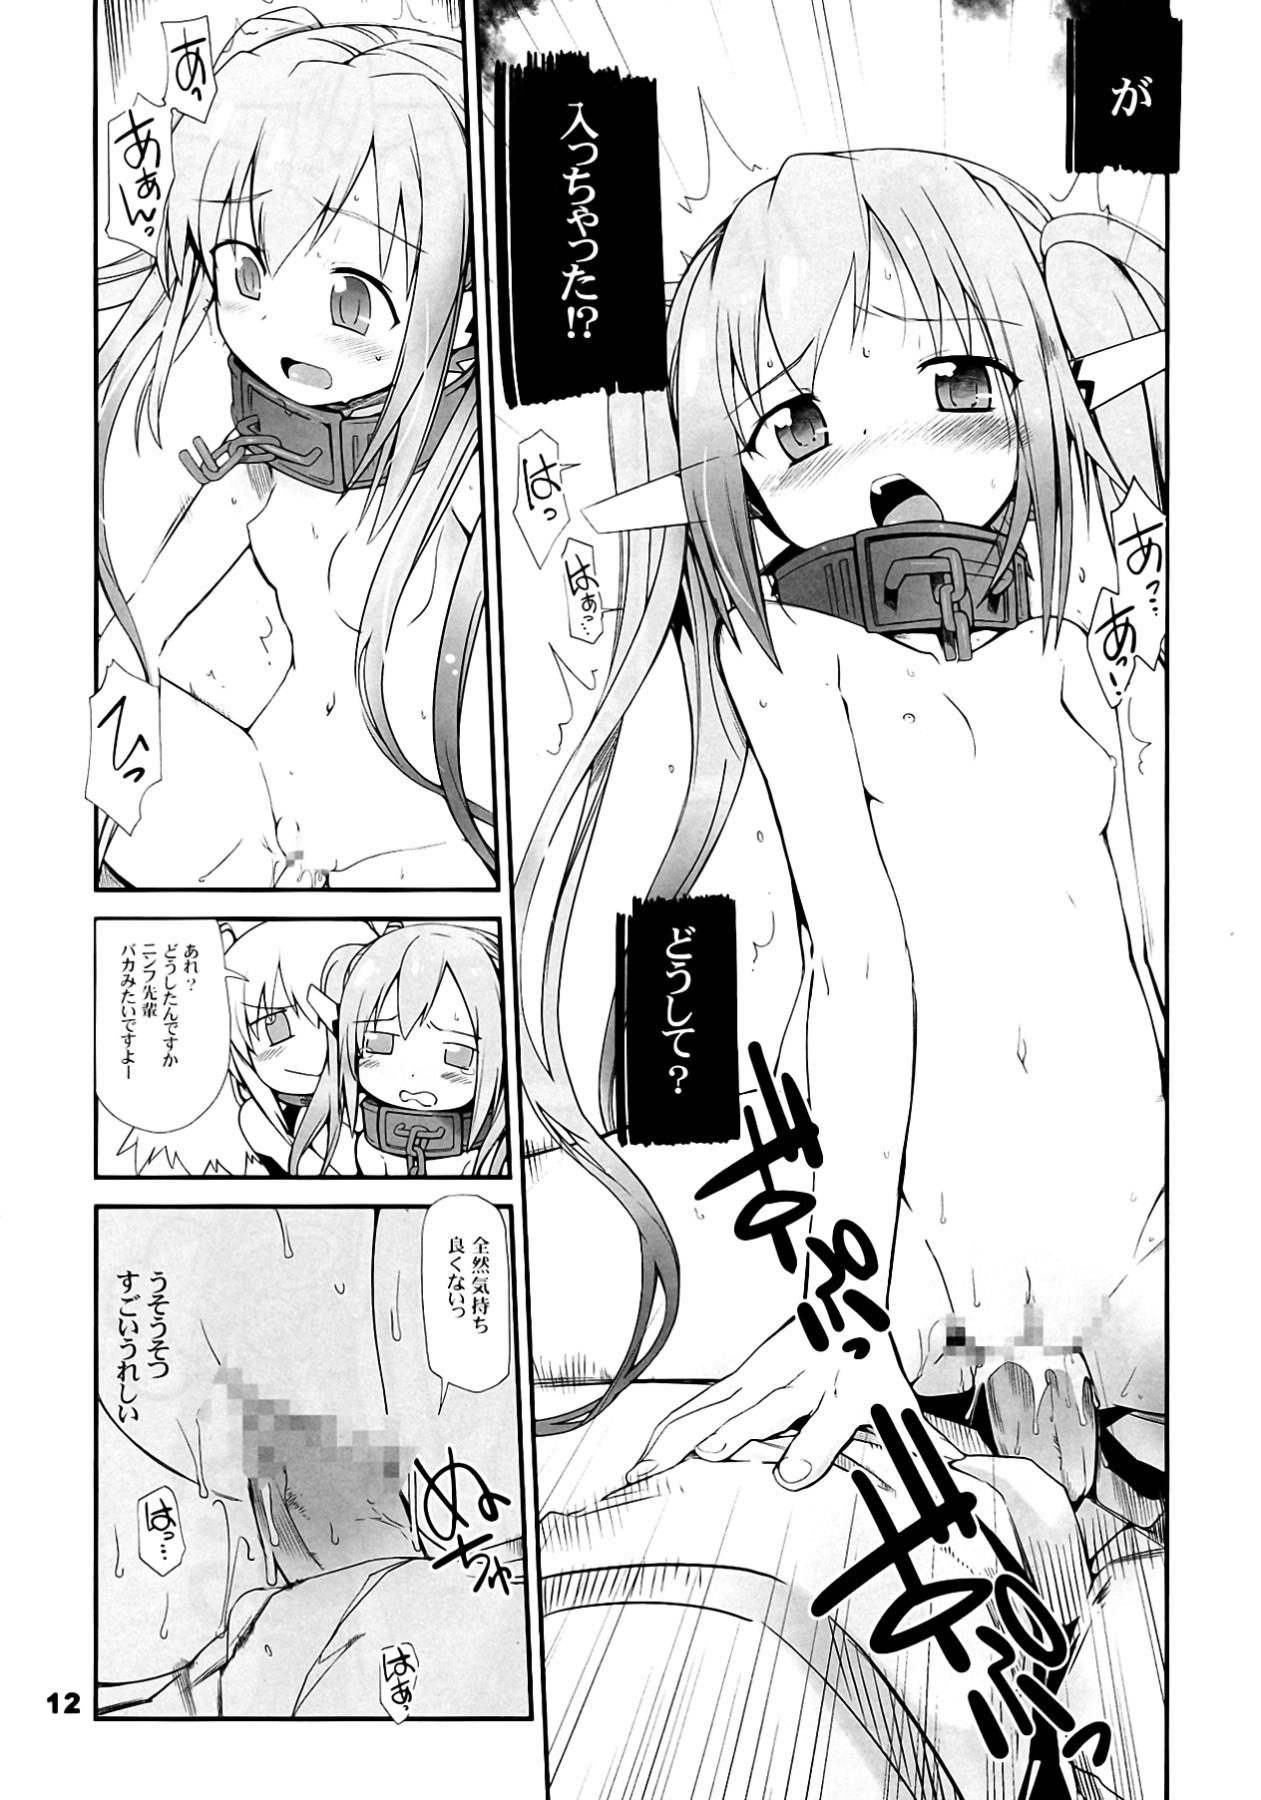 Adolescente Angeloid Maji Tenshi - Sora no otoshimono Hard Porn - Page 12